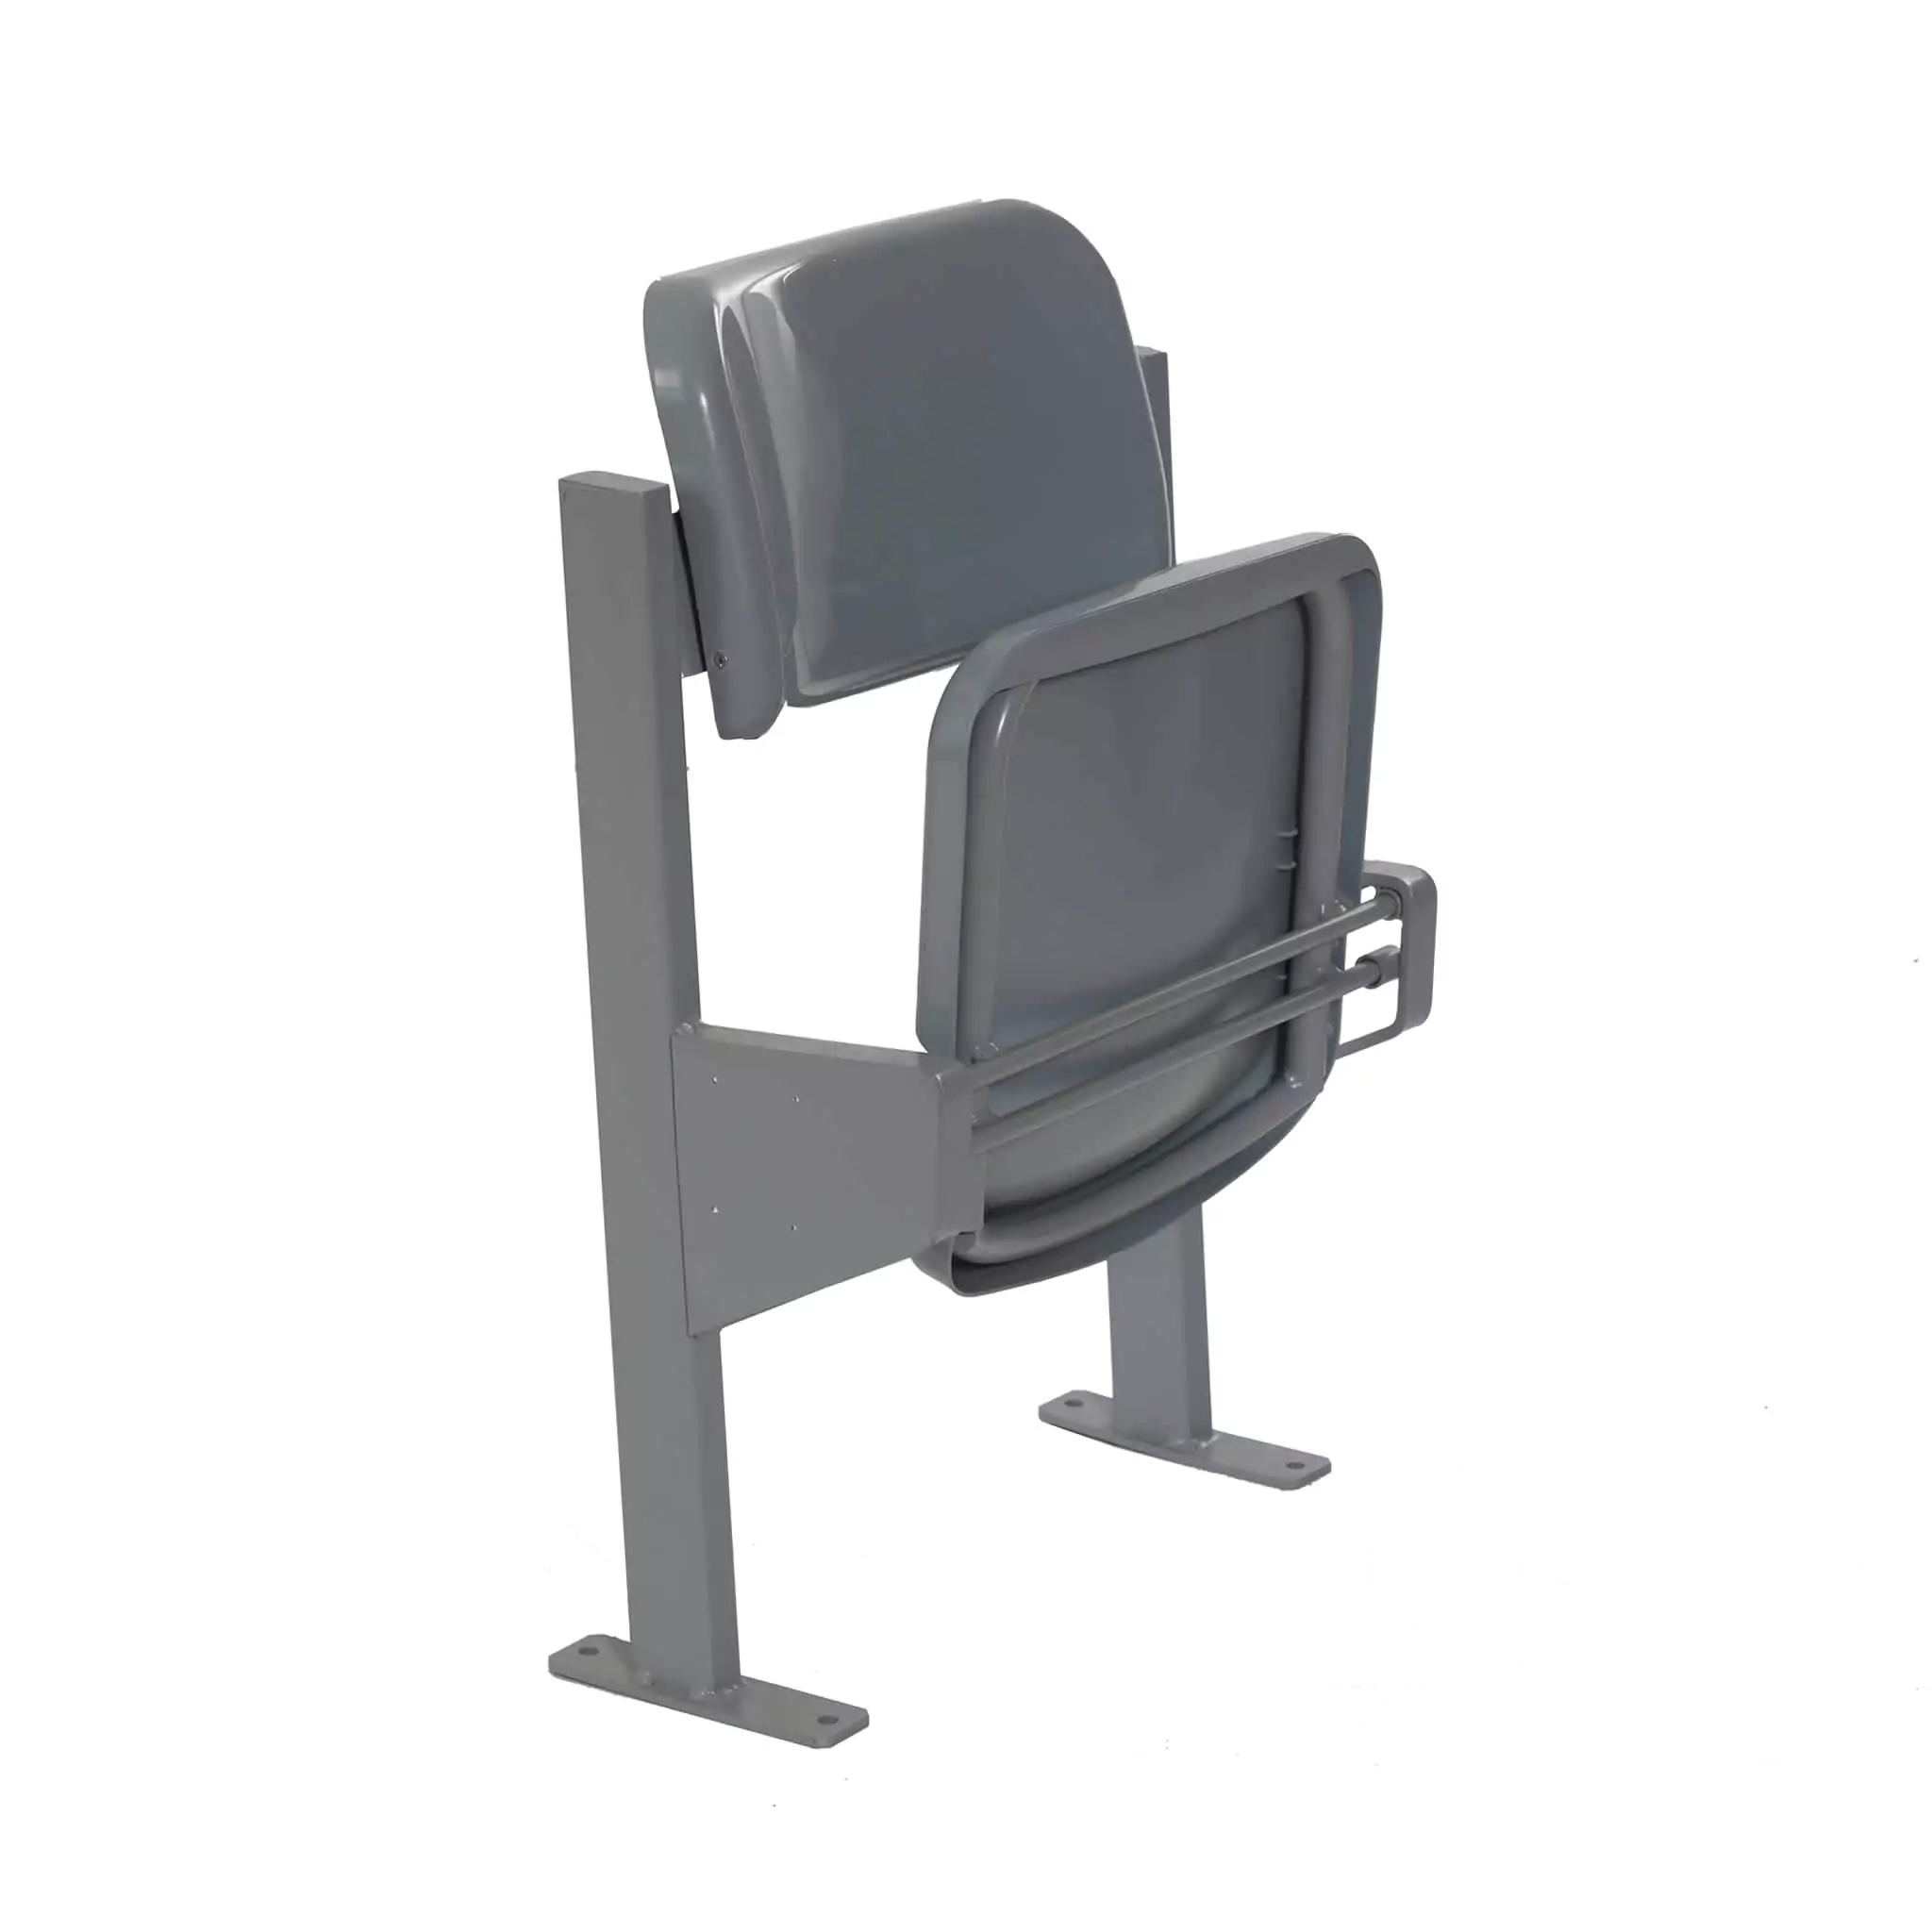 Simko Seating Product Folding Stadium Seat Azurit 04